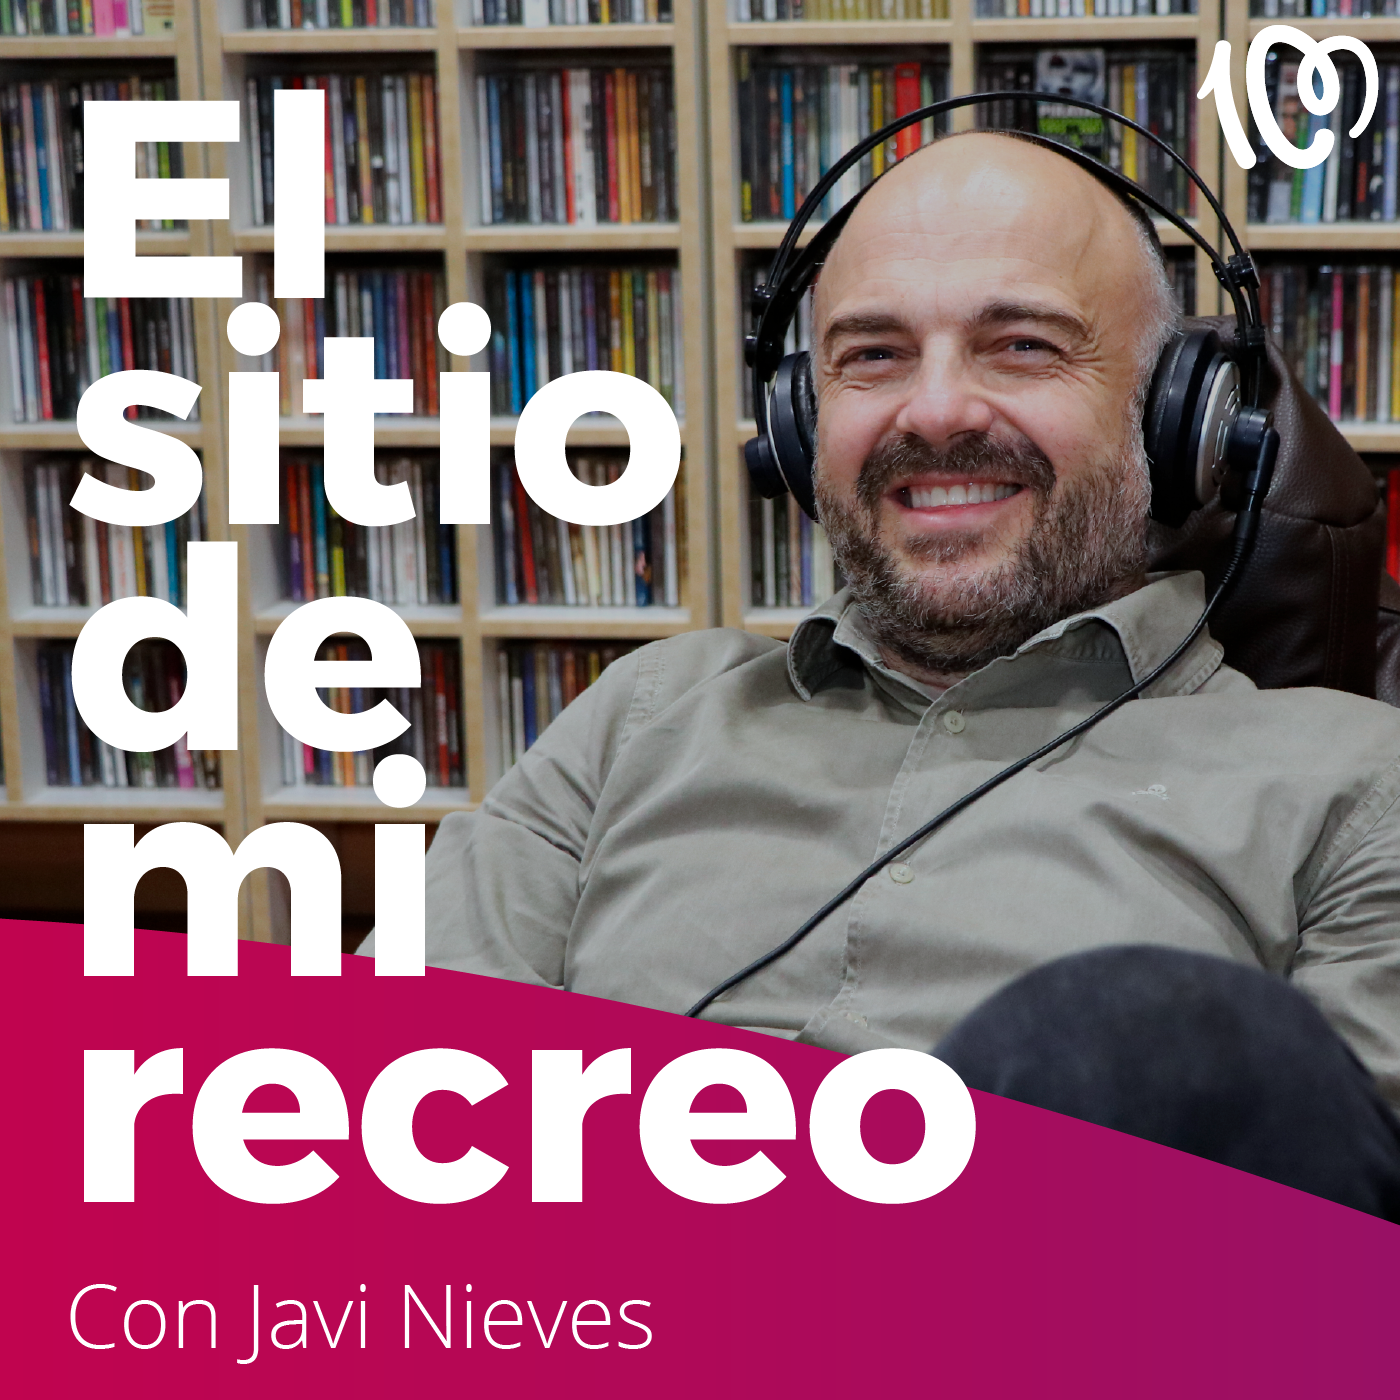 Cómo era Antonio Vega en boca de quienes le conocieron, podcast Javi Nieves